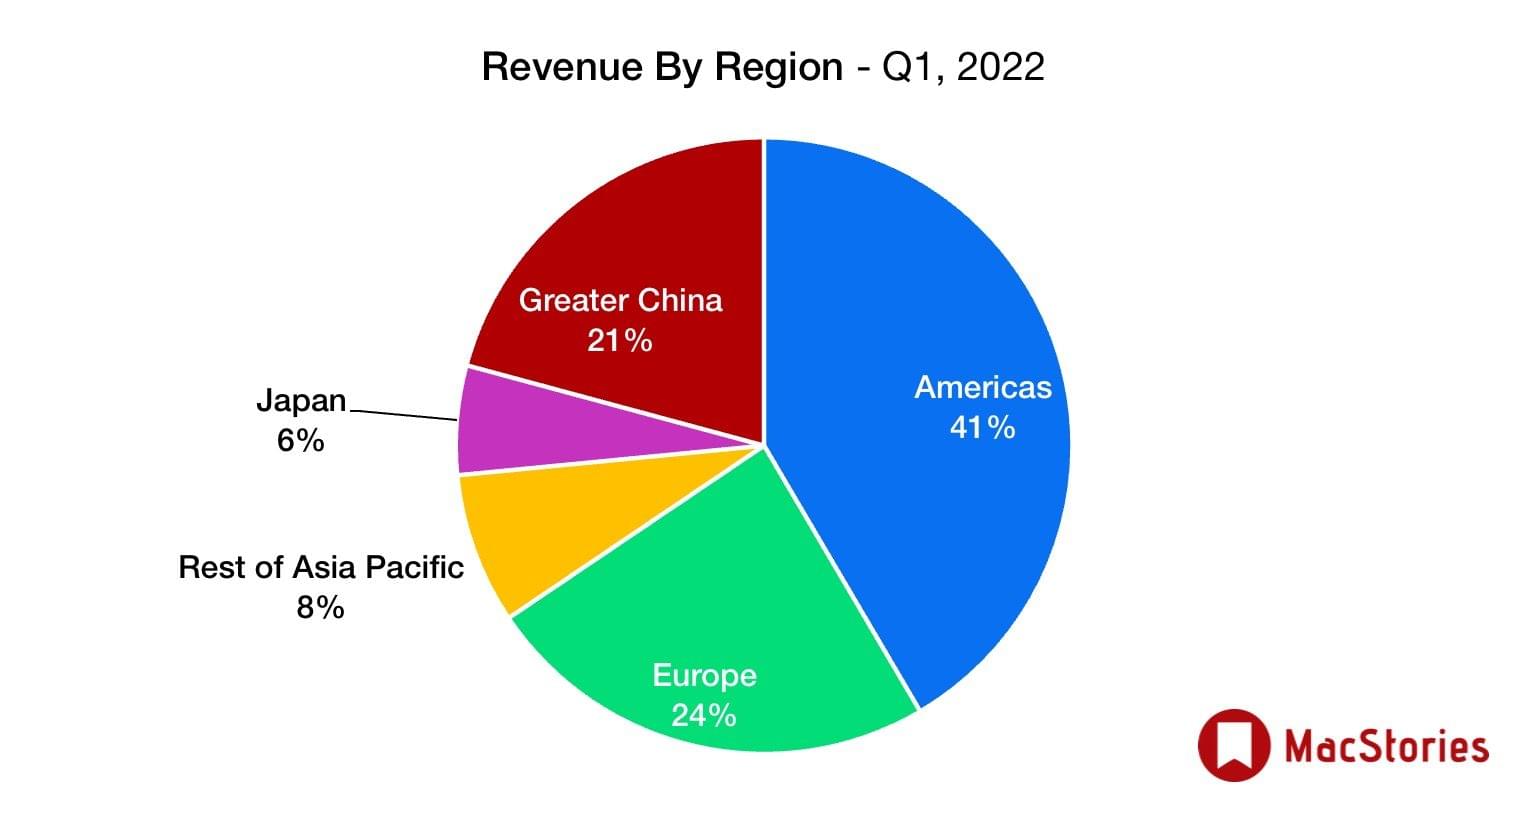 Apple Q1 2022 Results 123.95 Billion Revenue MacStories